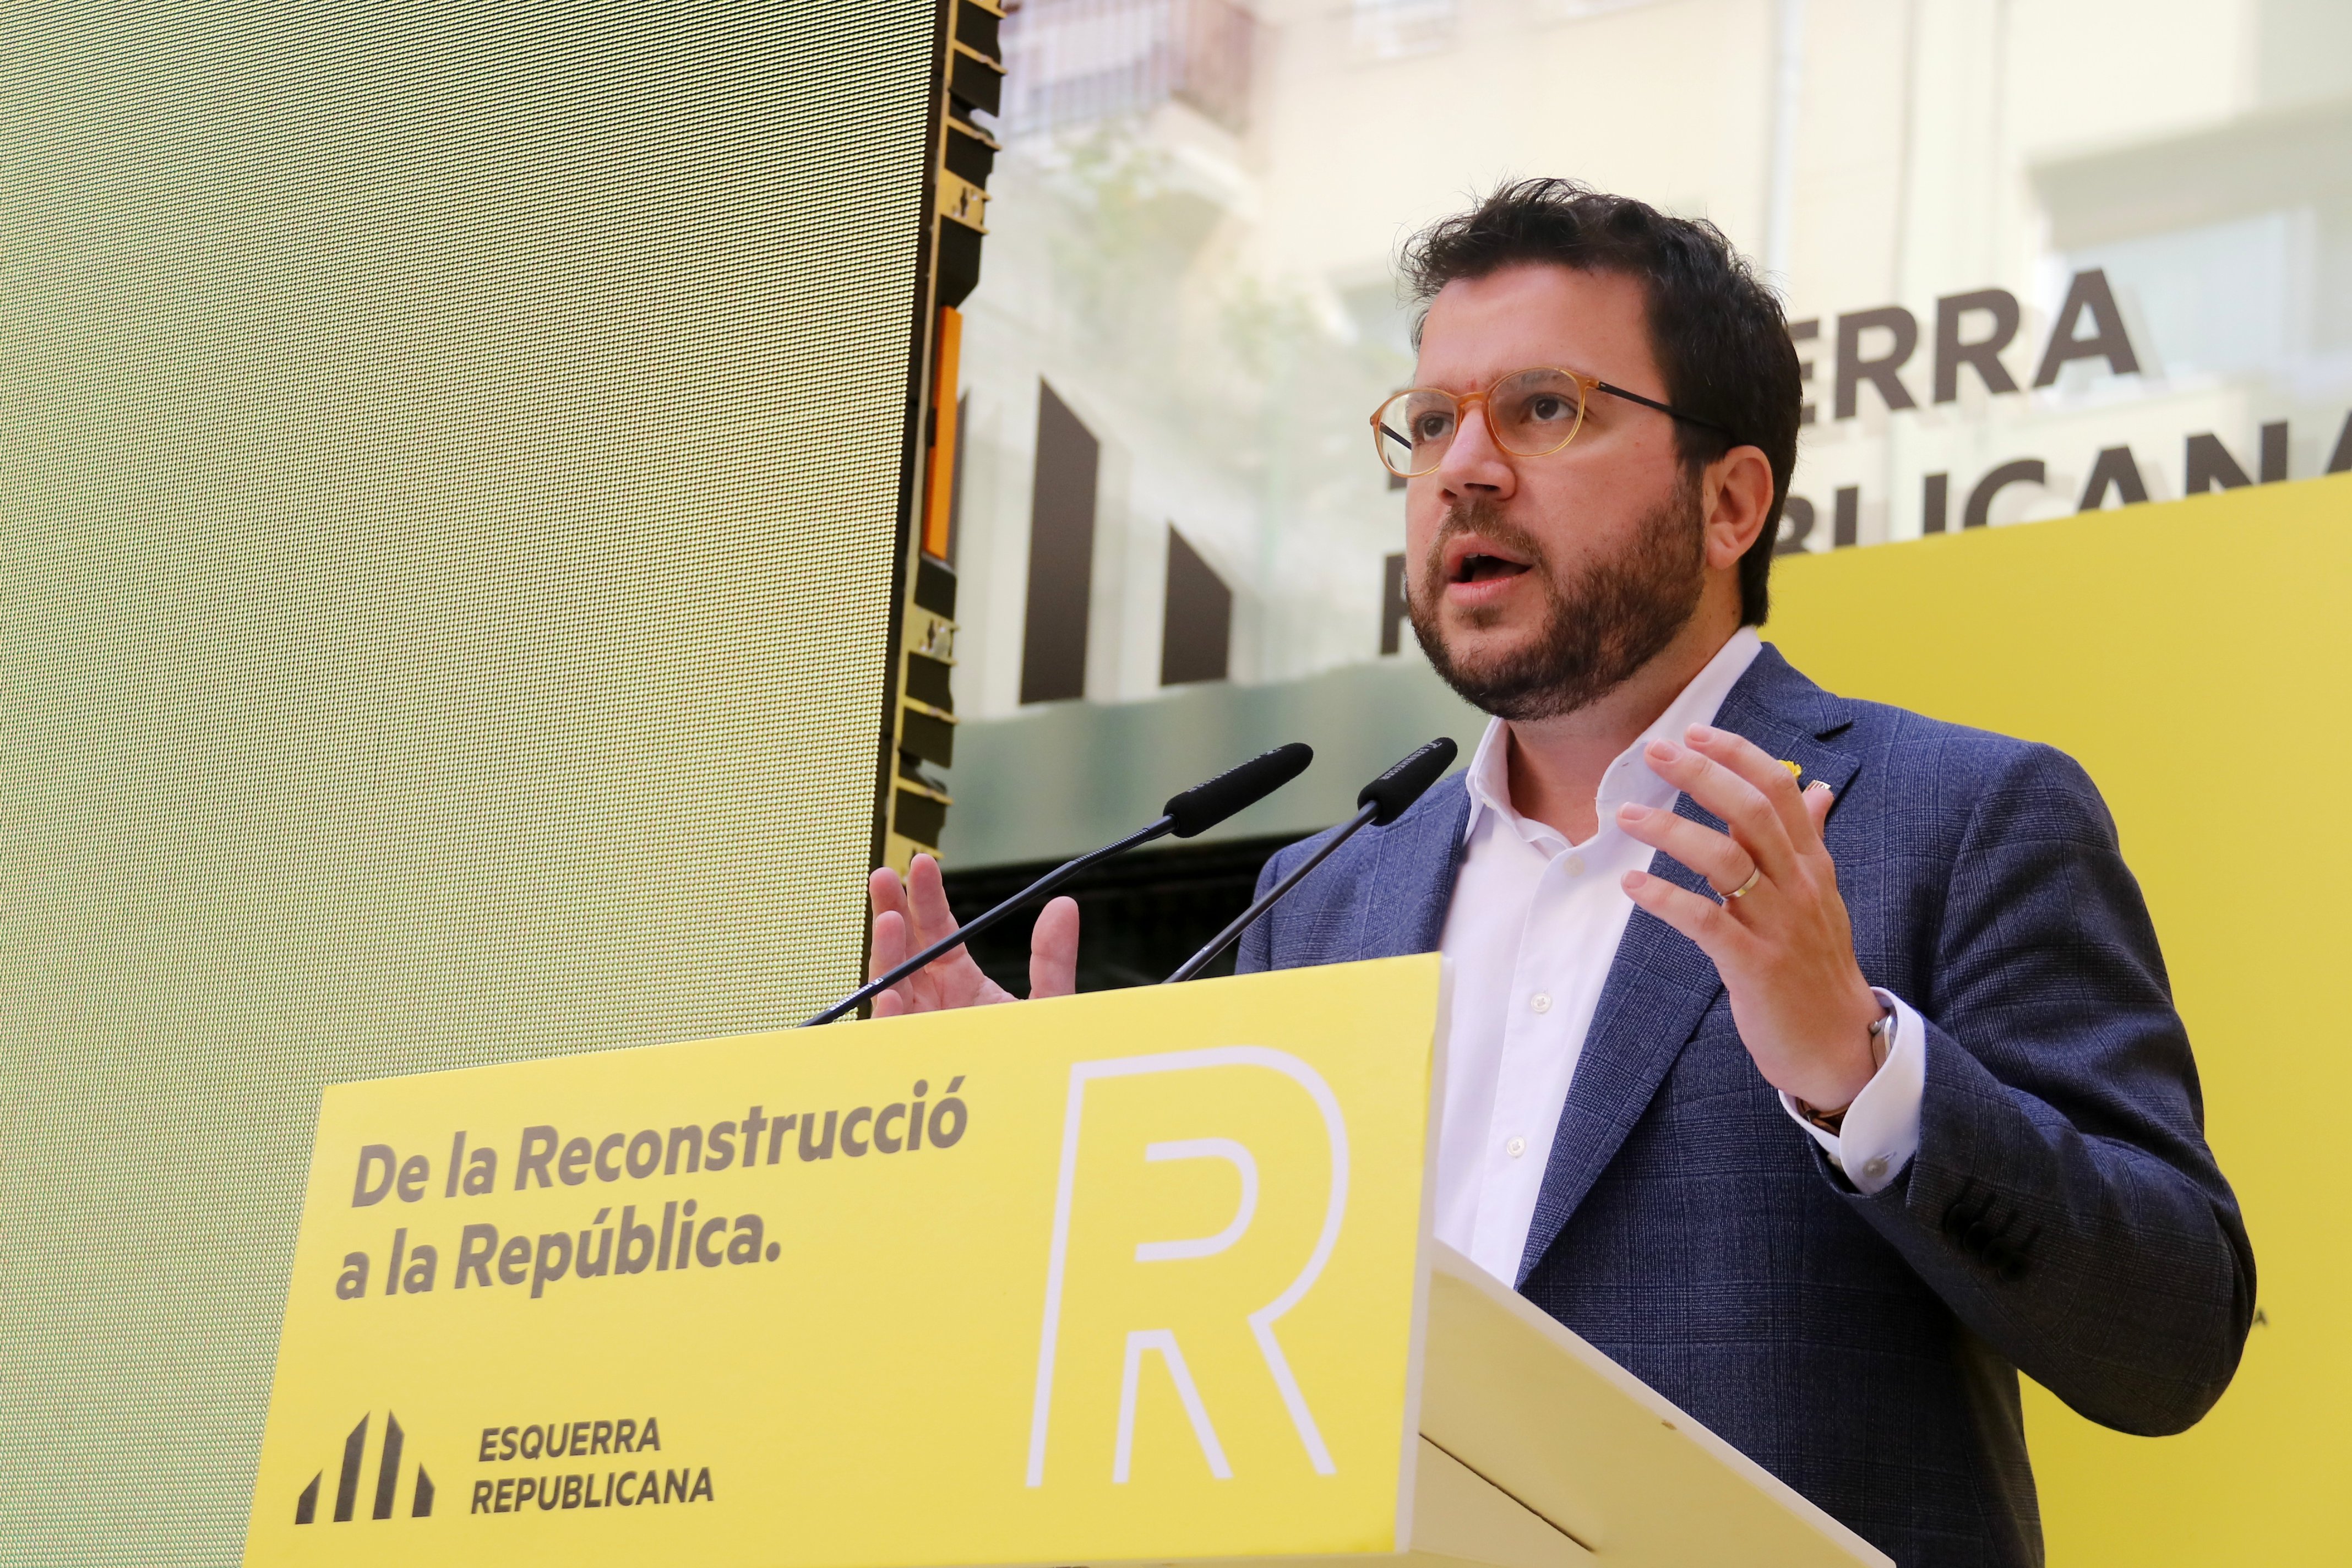 Aragonès: "L'agenda de la reconstrucció és l'agenda de la república"